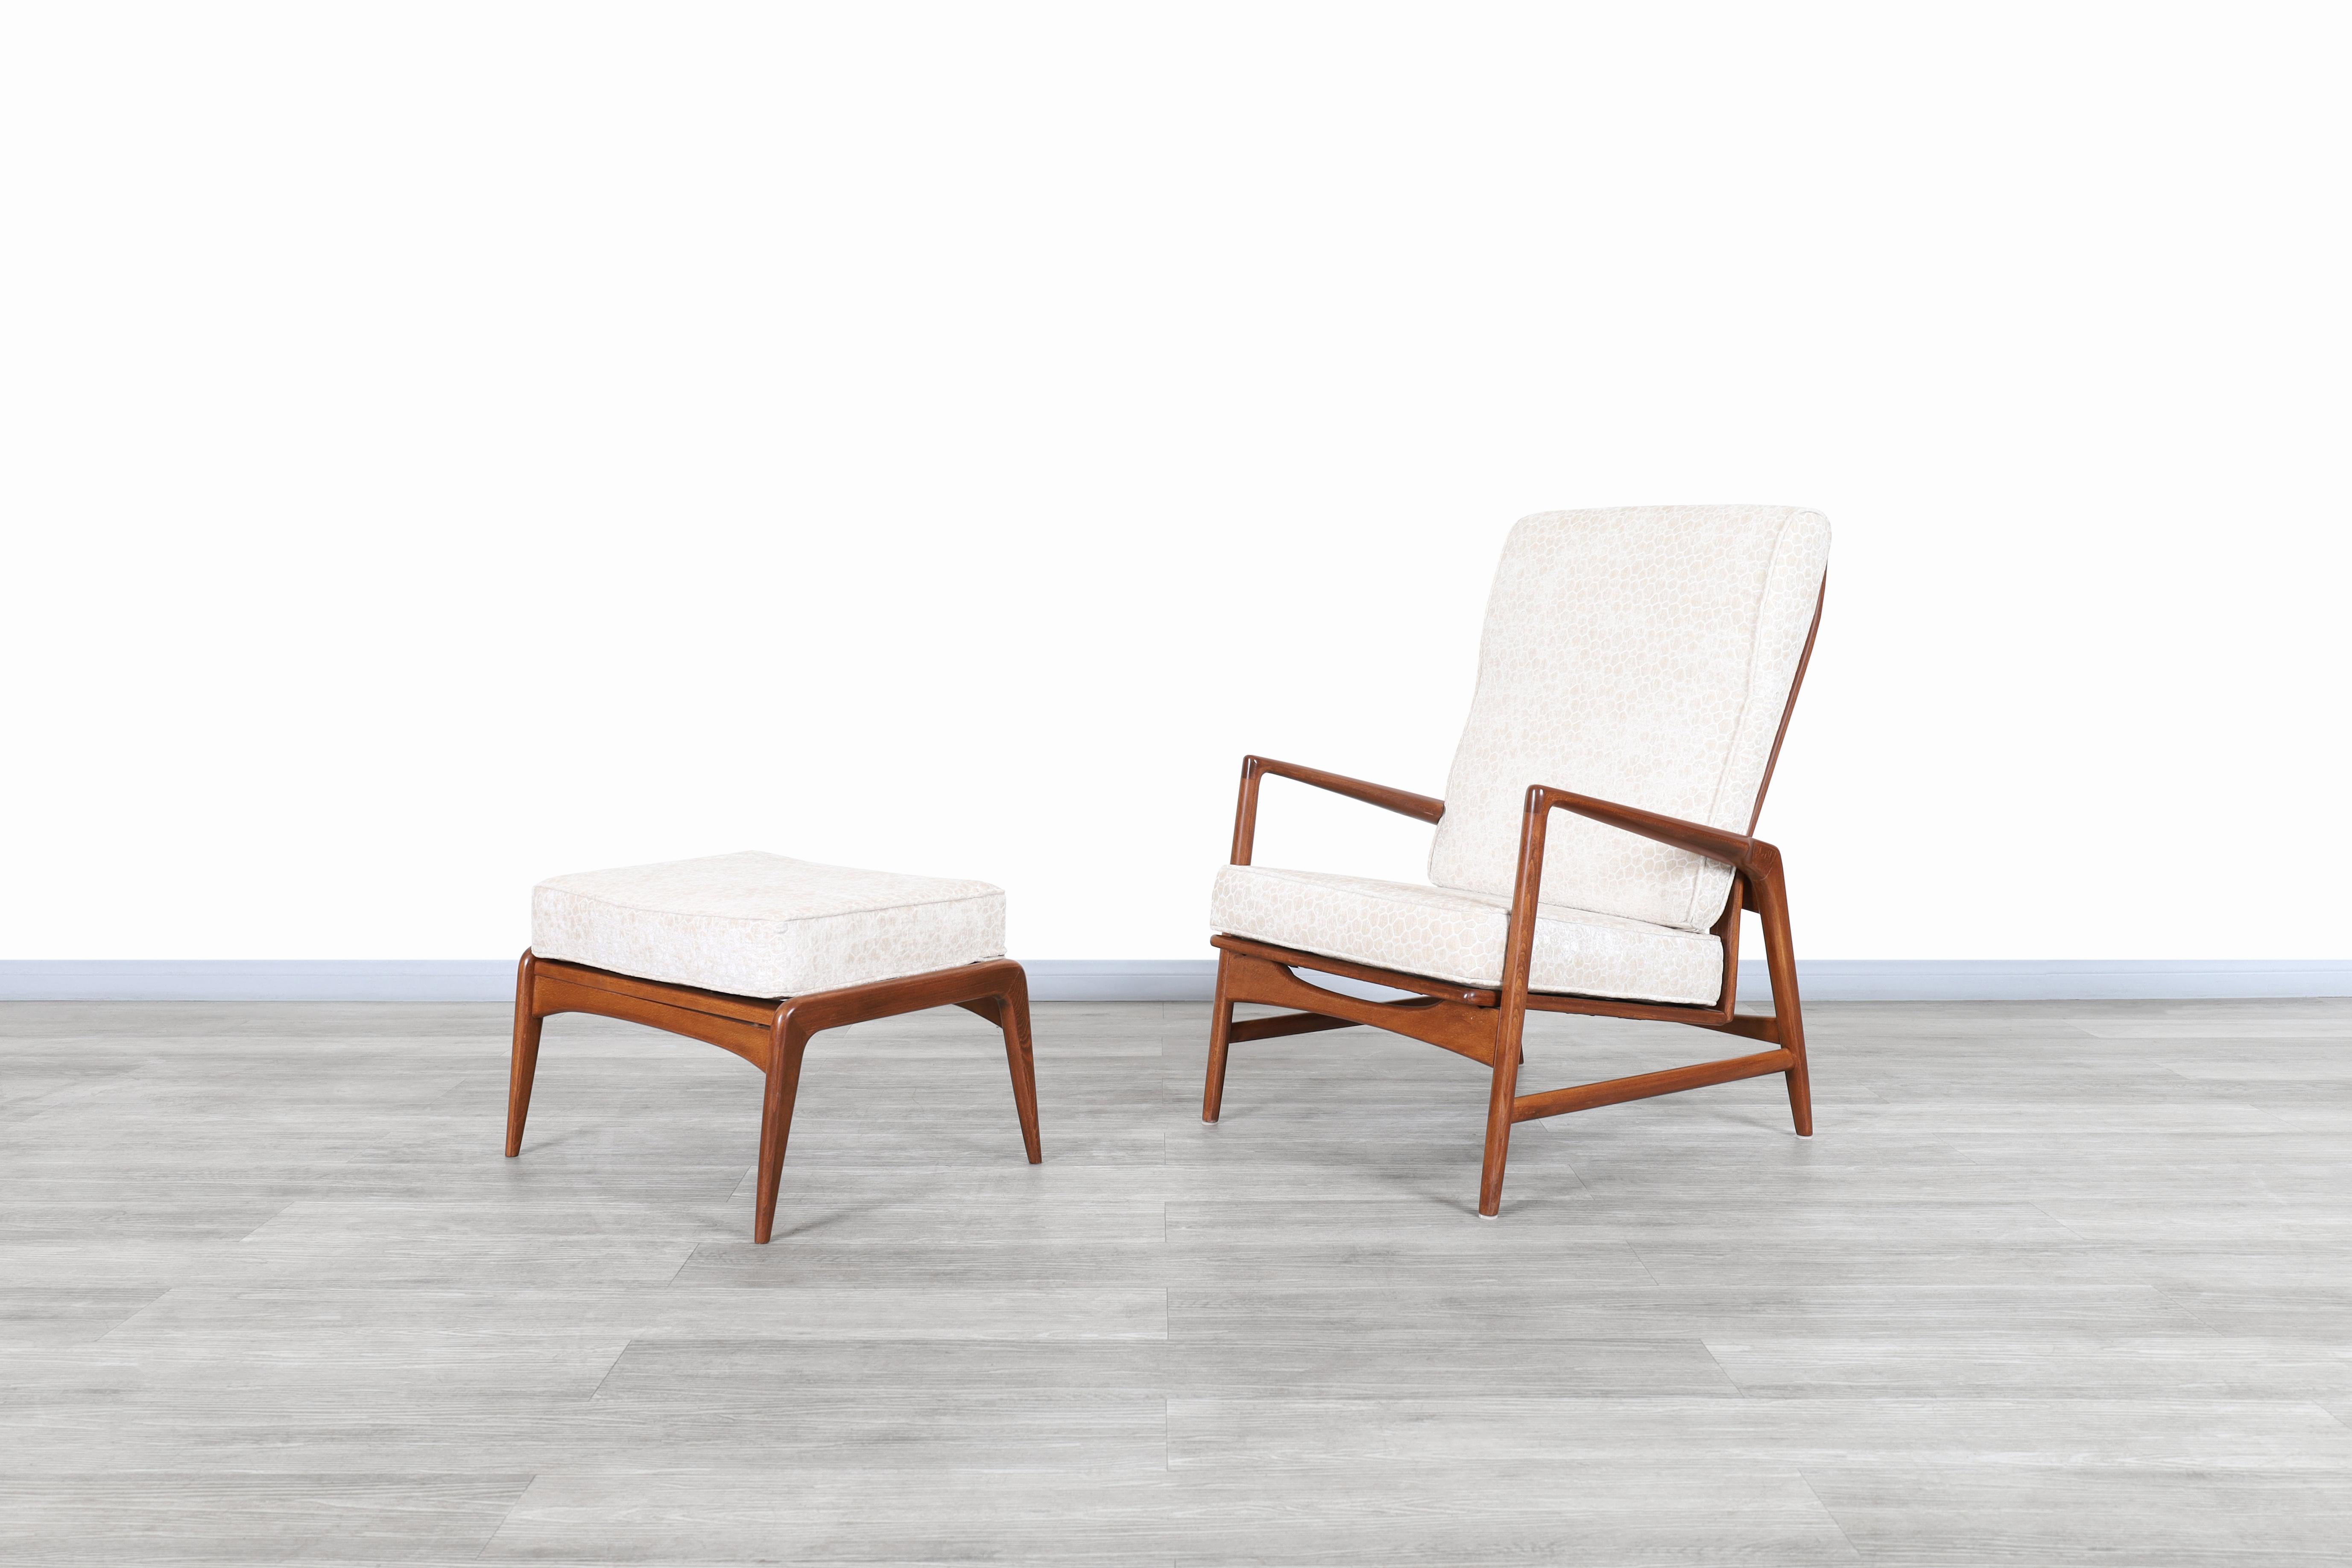 Erstaunliche dänische Nussbaum-Liegestühle und Ottomane, entworfen von Ib Kofod Larsen in Dänemark, um 1960. Sowohl der Stuhl als auch die Ottomane haben einen Rahmen aus gebeiztem Walnussholz, der in Handarbeit gefertigt wurde. Der Stuhl verfügt